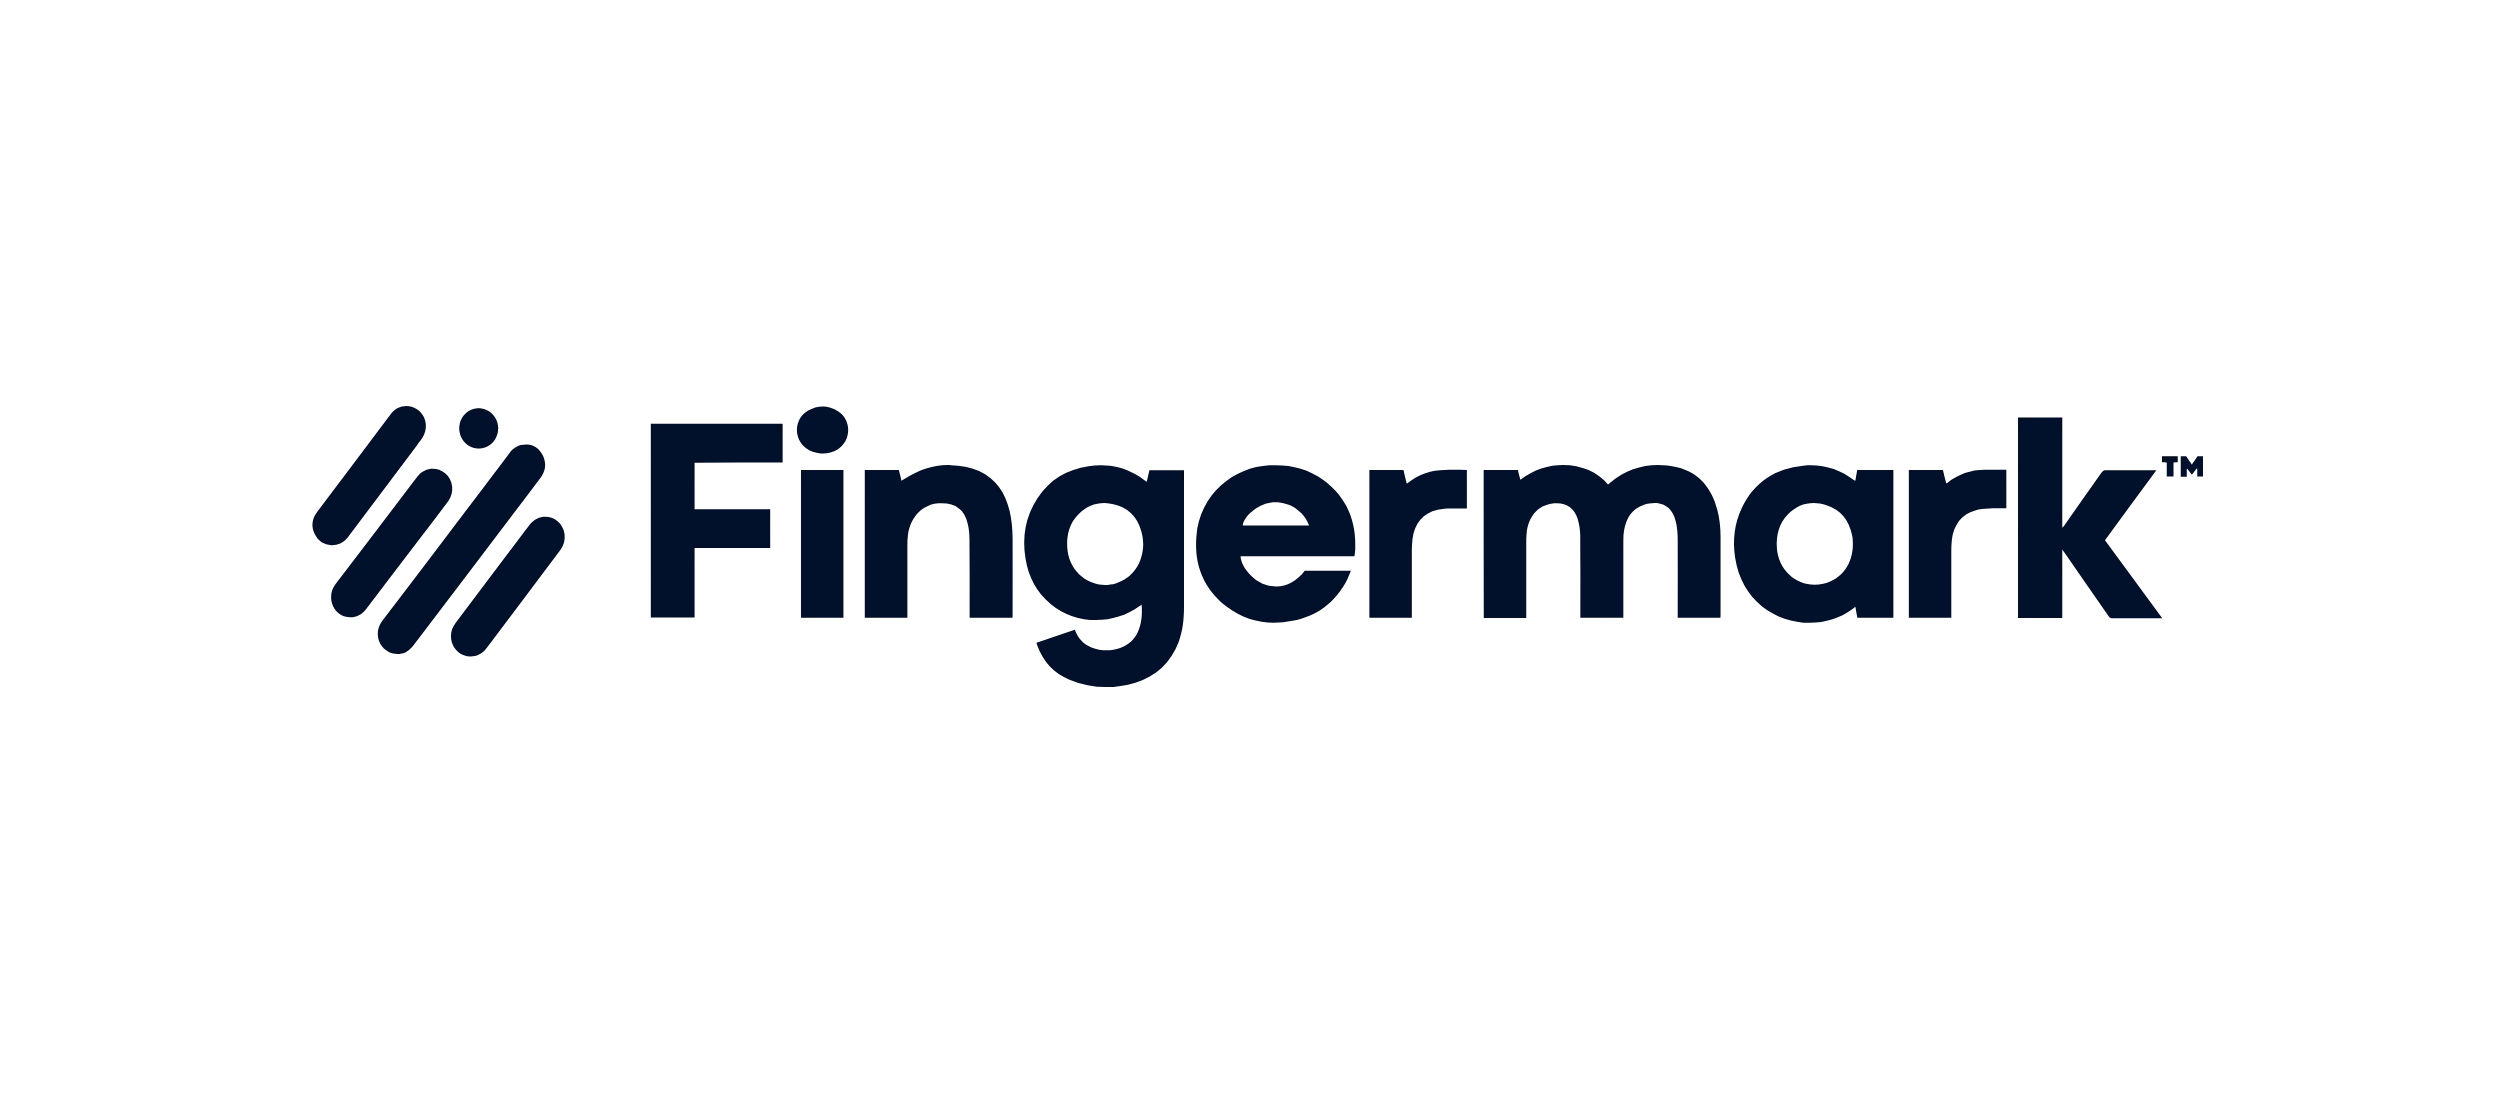 Fingermark logo